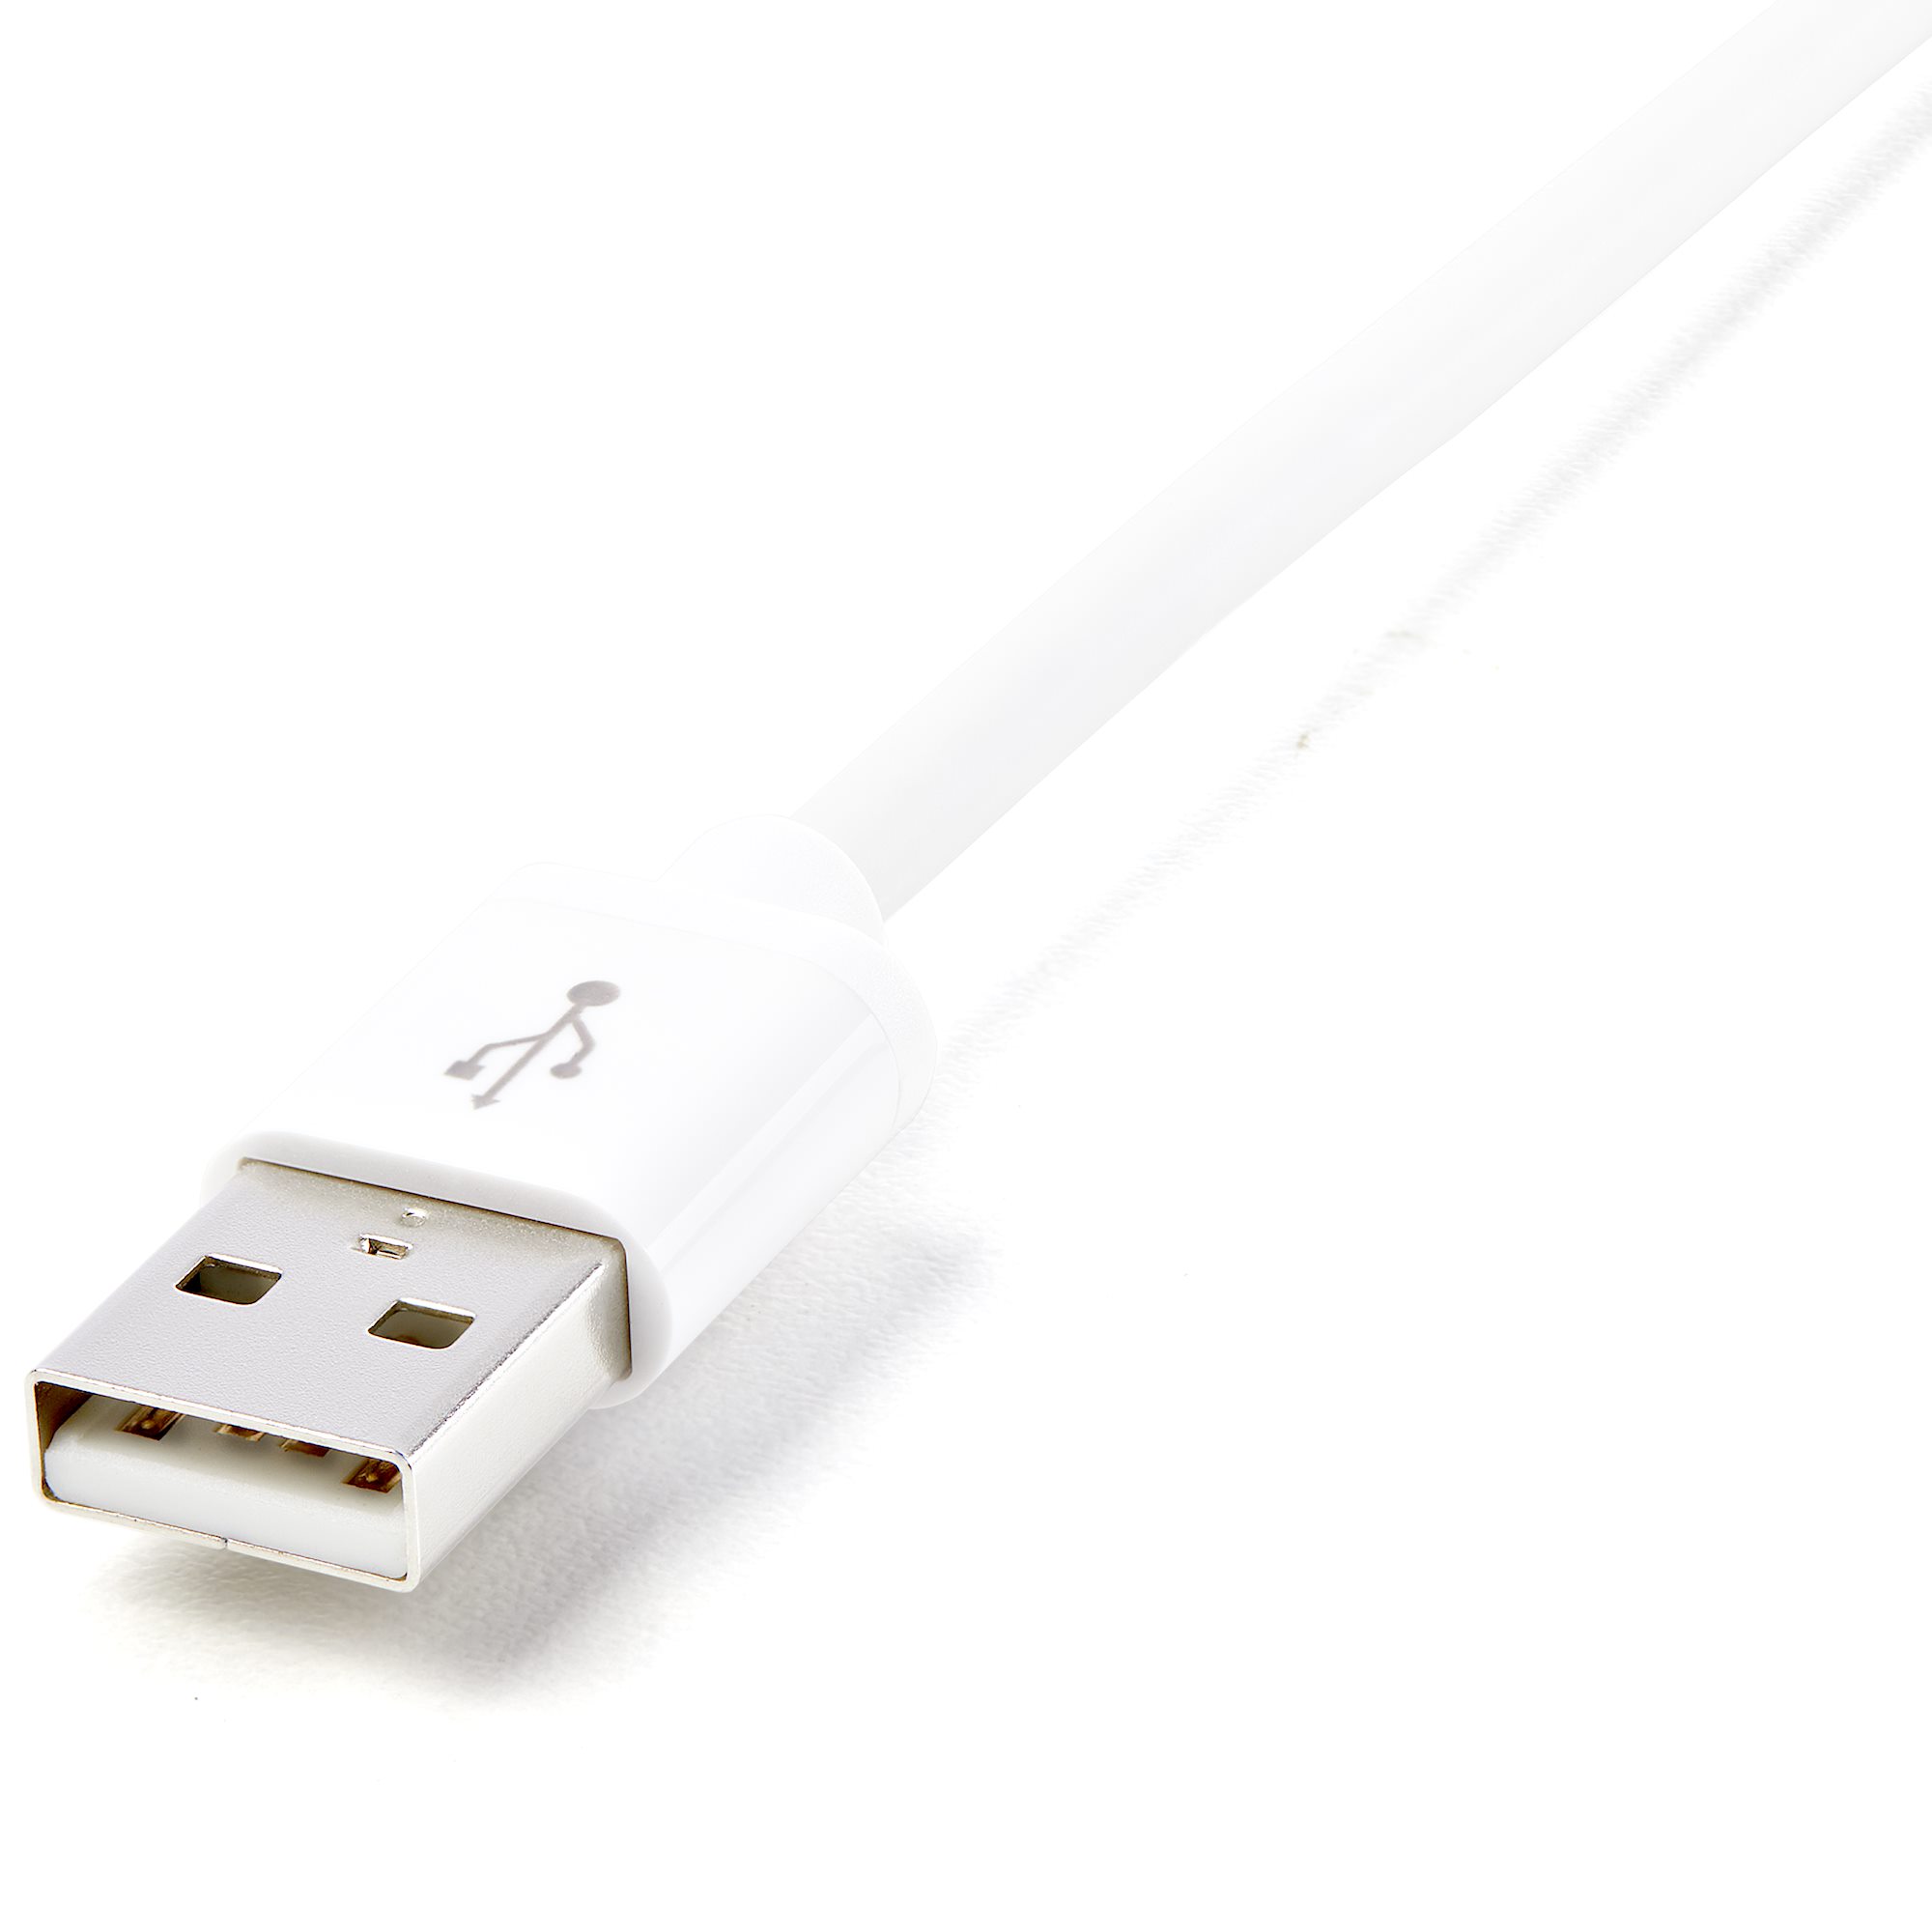 Câble d'extension USB 3.0 de 15cm - Rallonge / Prolongateur USB A vers A -  Répéteur USB 3.0 - M/F - Noir - Rallonge de câble USB - USB type A (F)